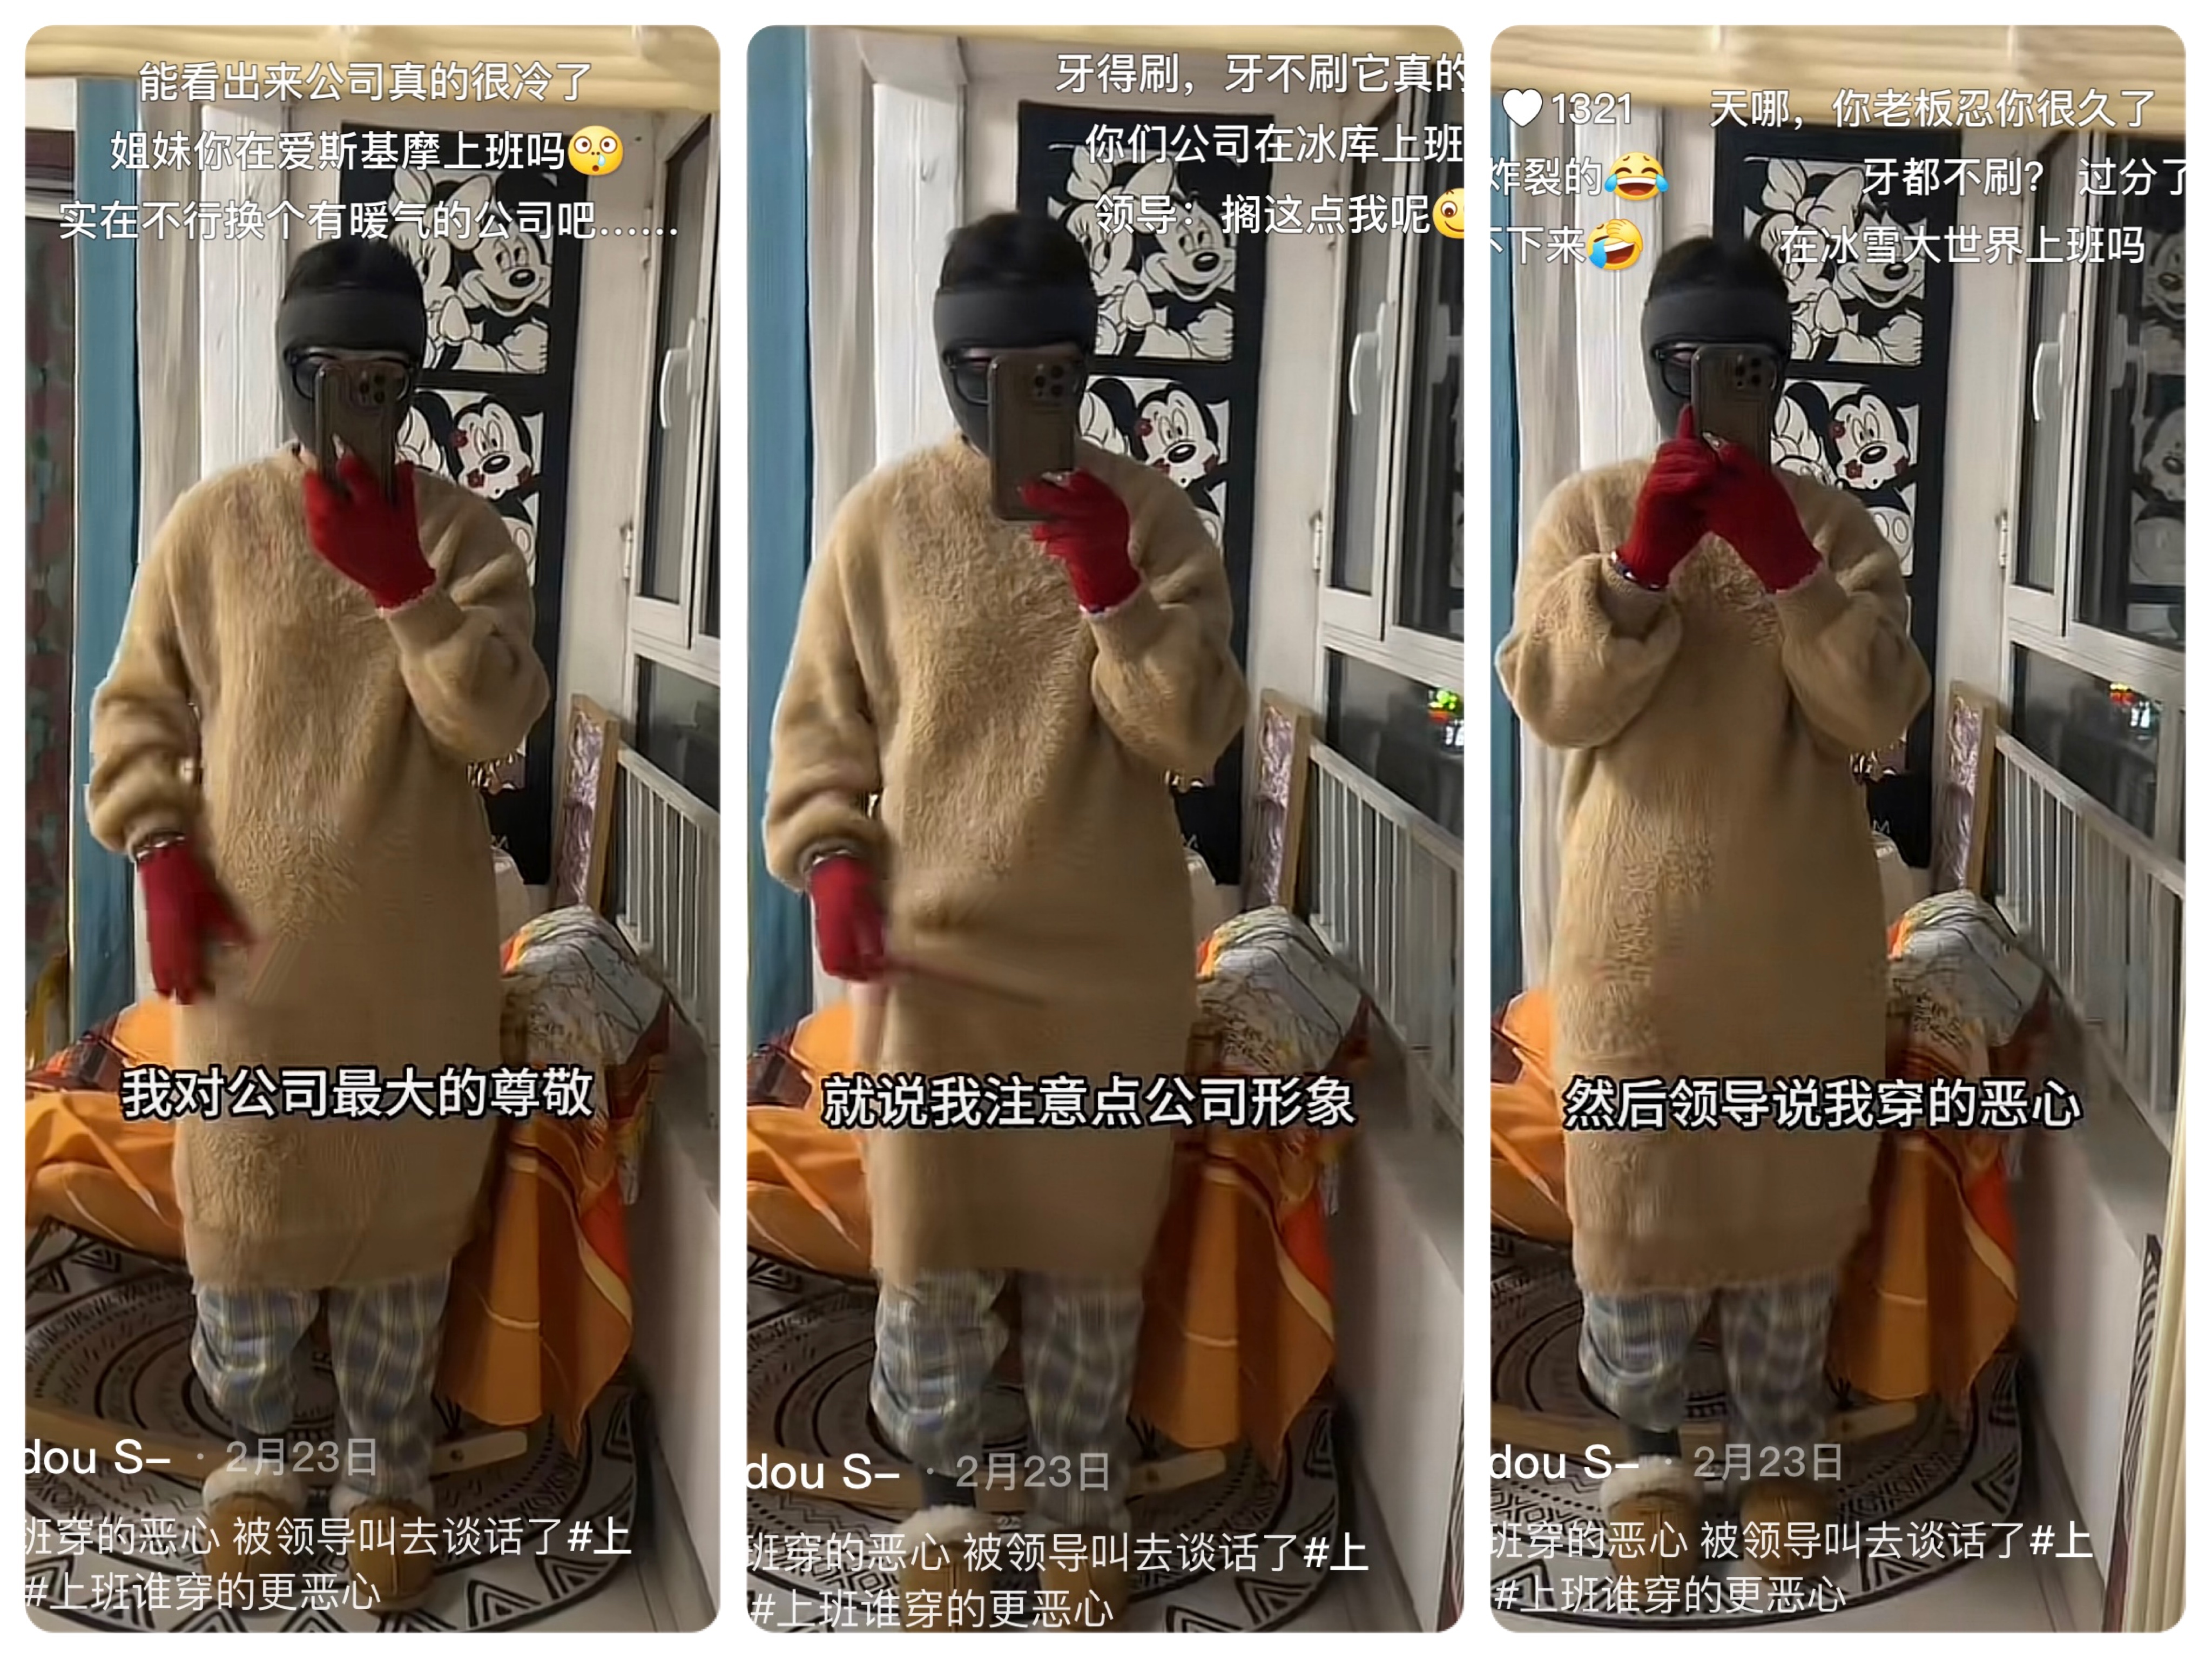 臉都懶得洗！中國年輕人抗議工作環境「穿醜裝上班」比醜　譏笑：相由薪生